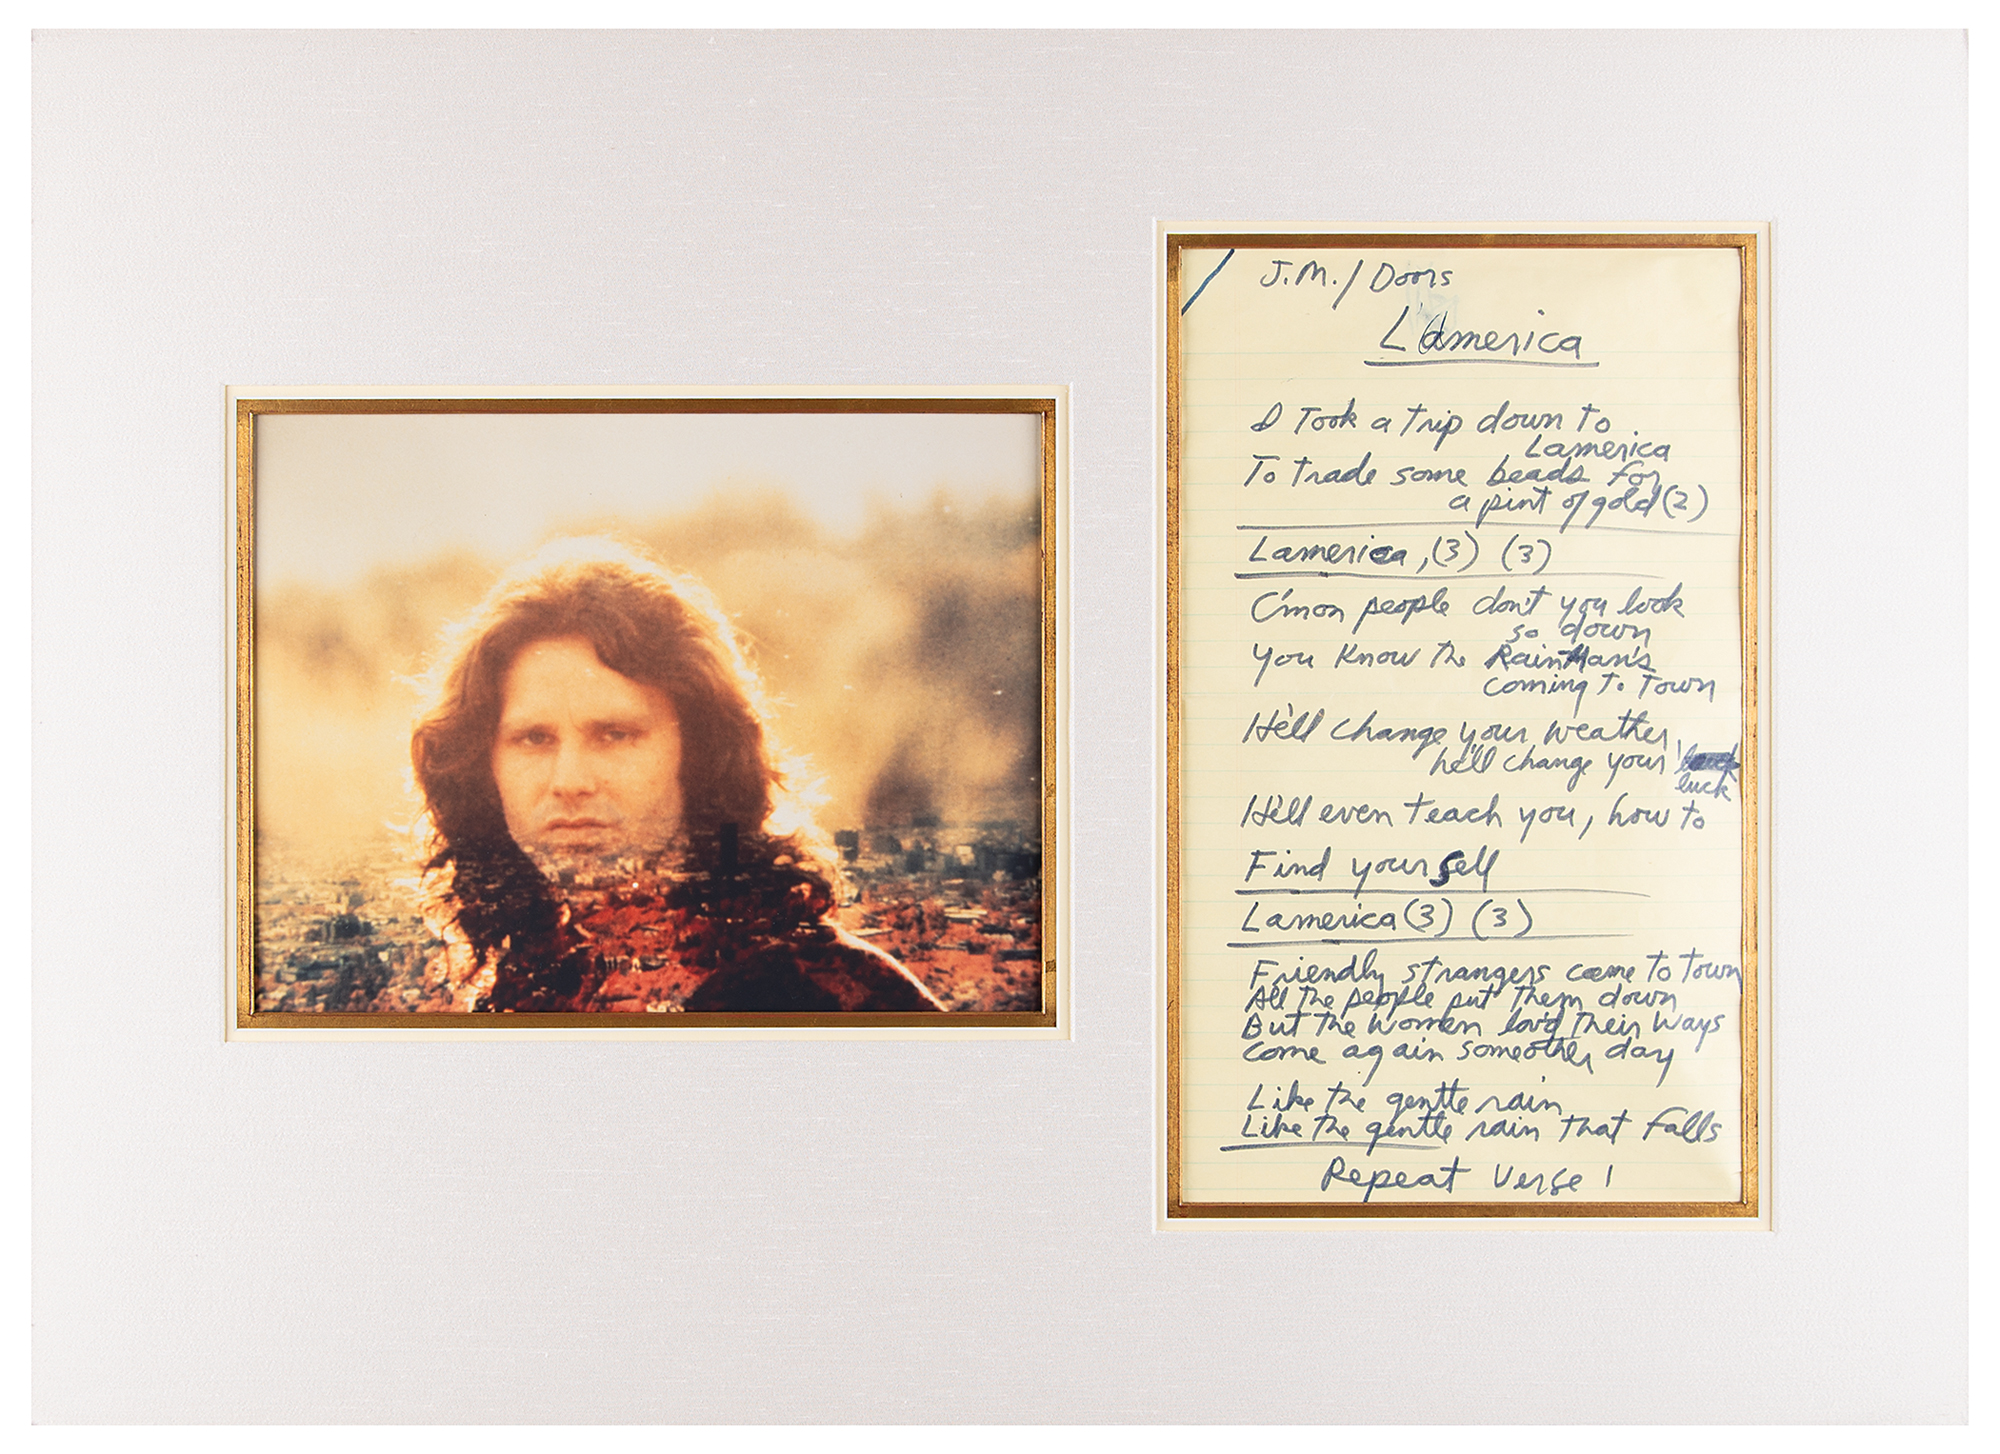 Jim Morrison: ALBUM - L.A WOMAN (LYRICS)